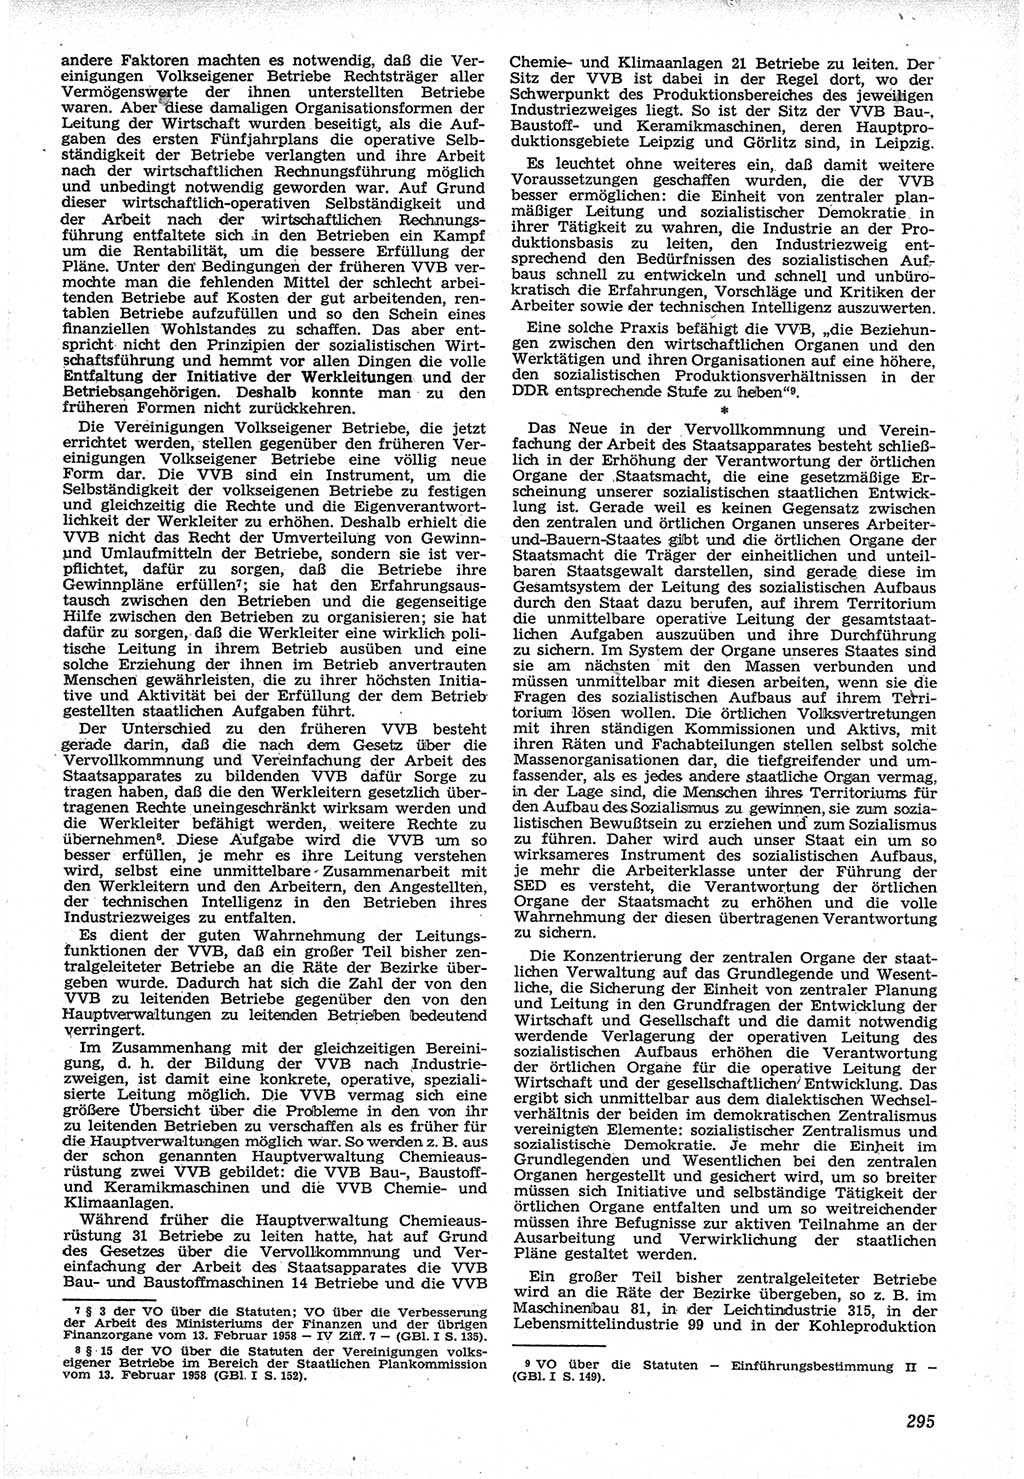 Neue Justiz (NJ), Zeitschrift für Recht und Rechtswissenschaft [Deutsche Demokratische Republik (DDR)], 12. Jahrgang 1958, Seite 295 (NJ DDR 1958, S. 295)